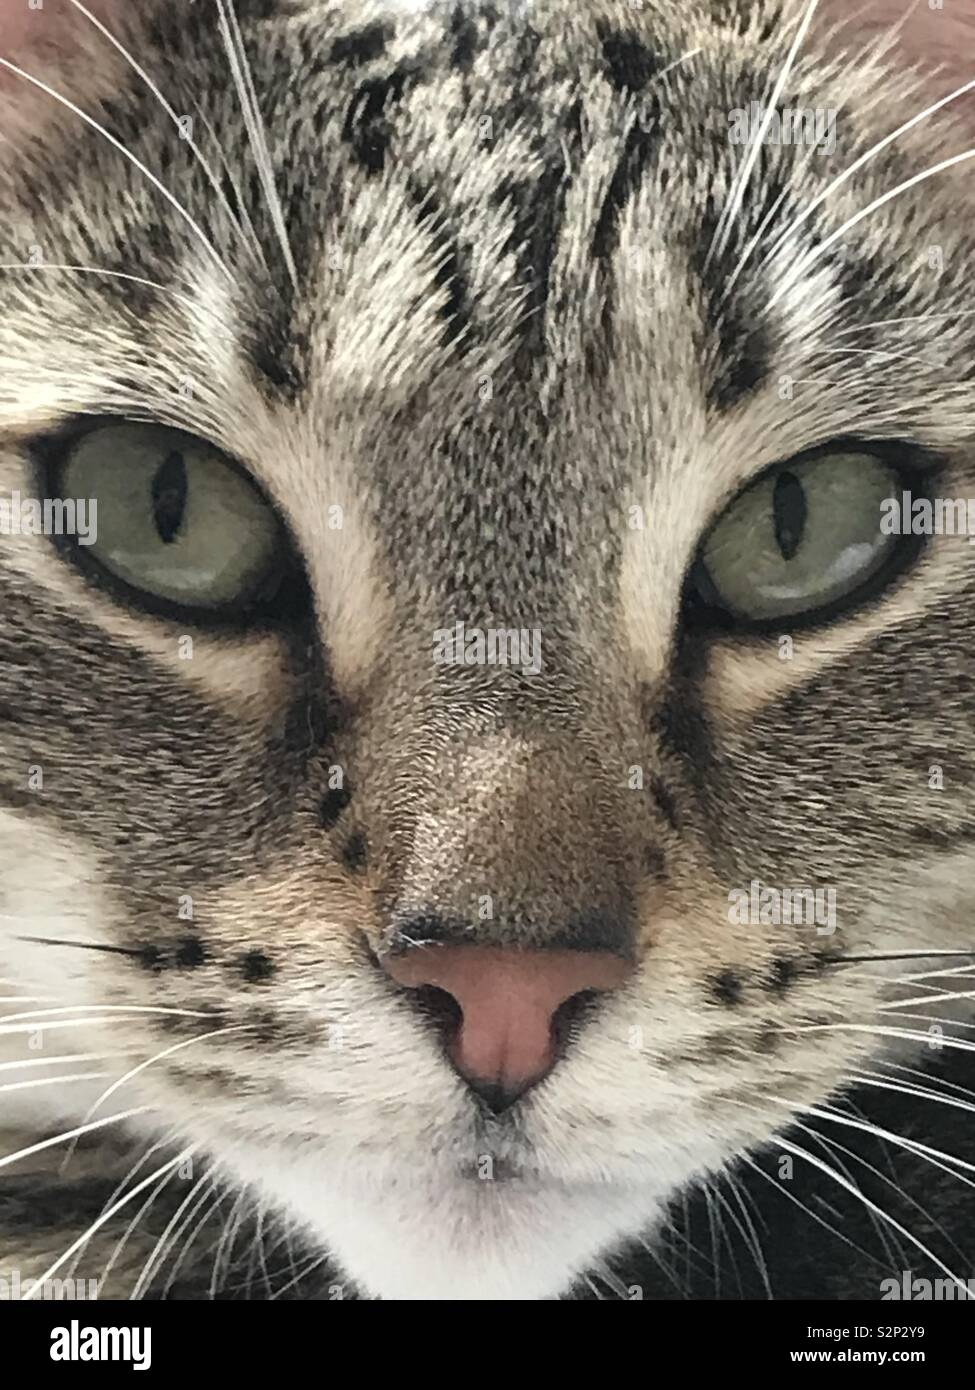 Kitten close up Stock Photo